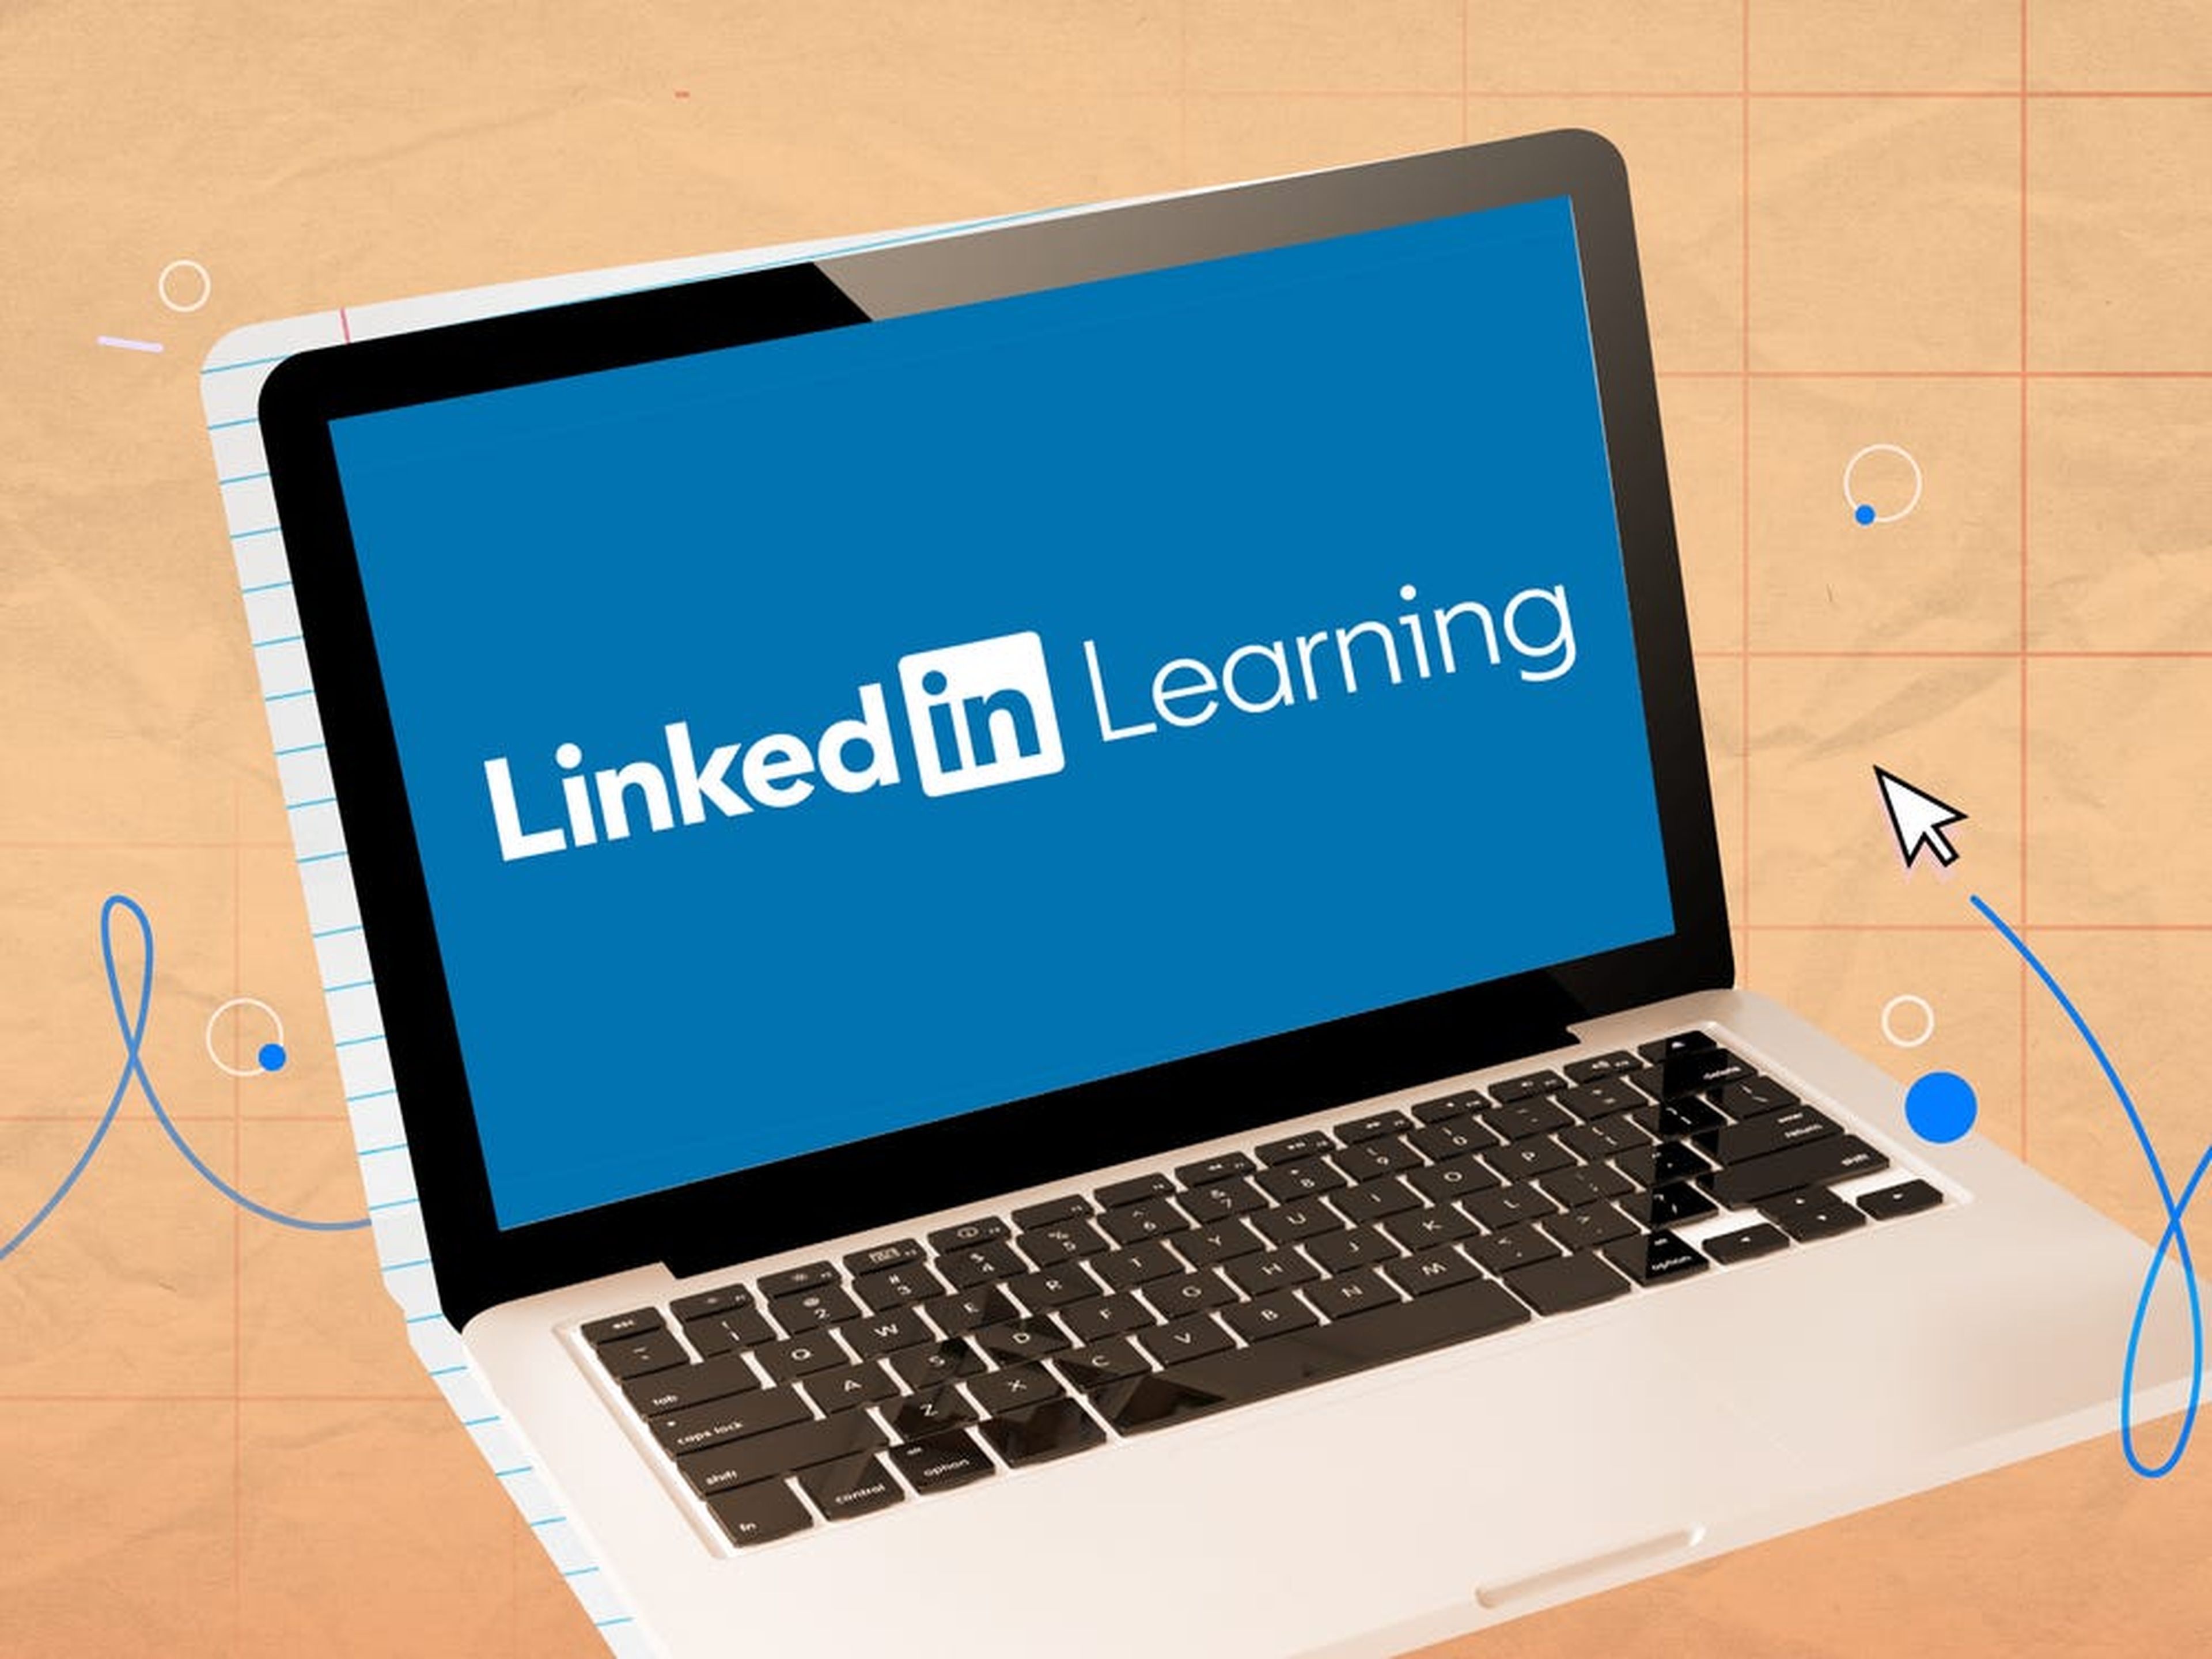 LinkedIn Learning ofrece cursos breves de video online para ayudar a desarrollar diversas habilidades profesionales.